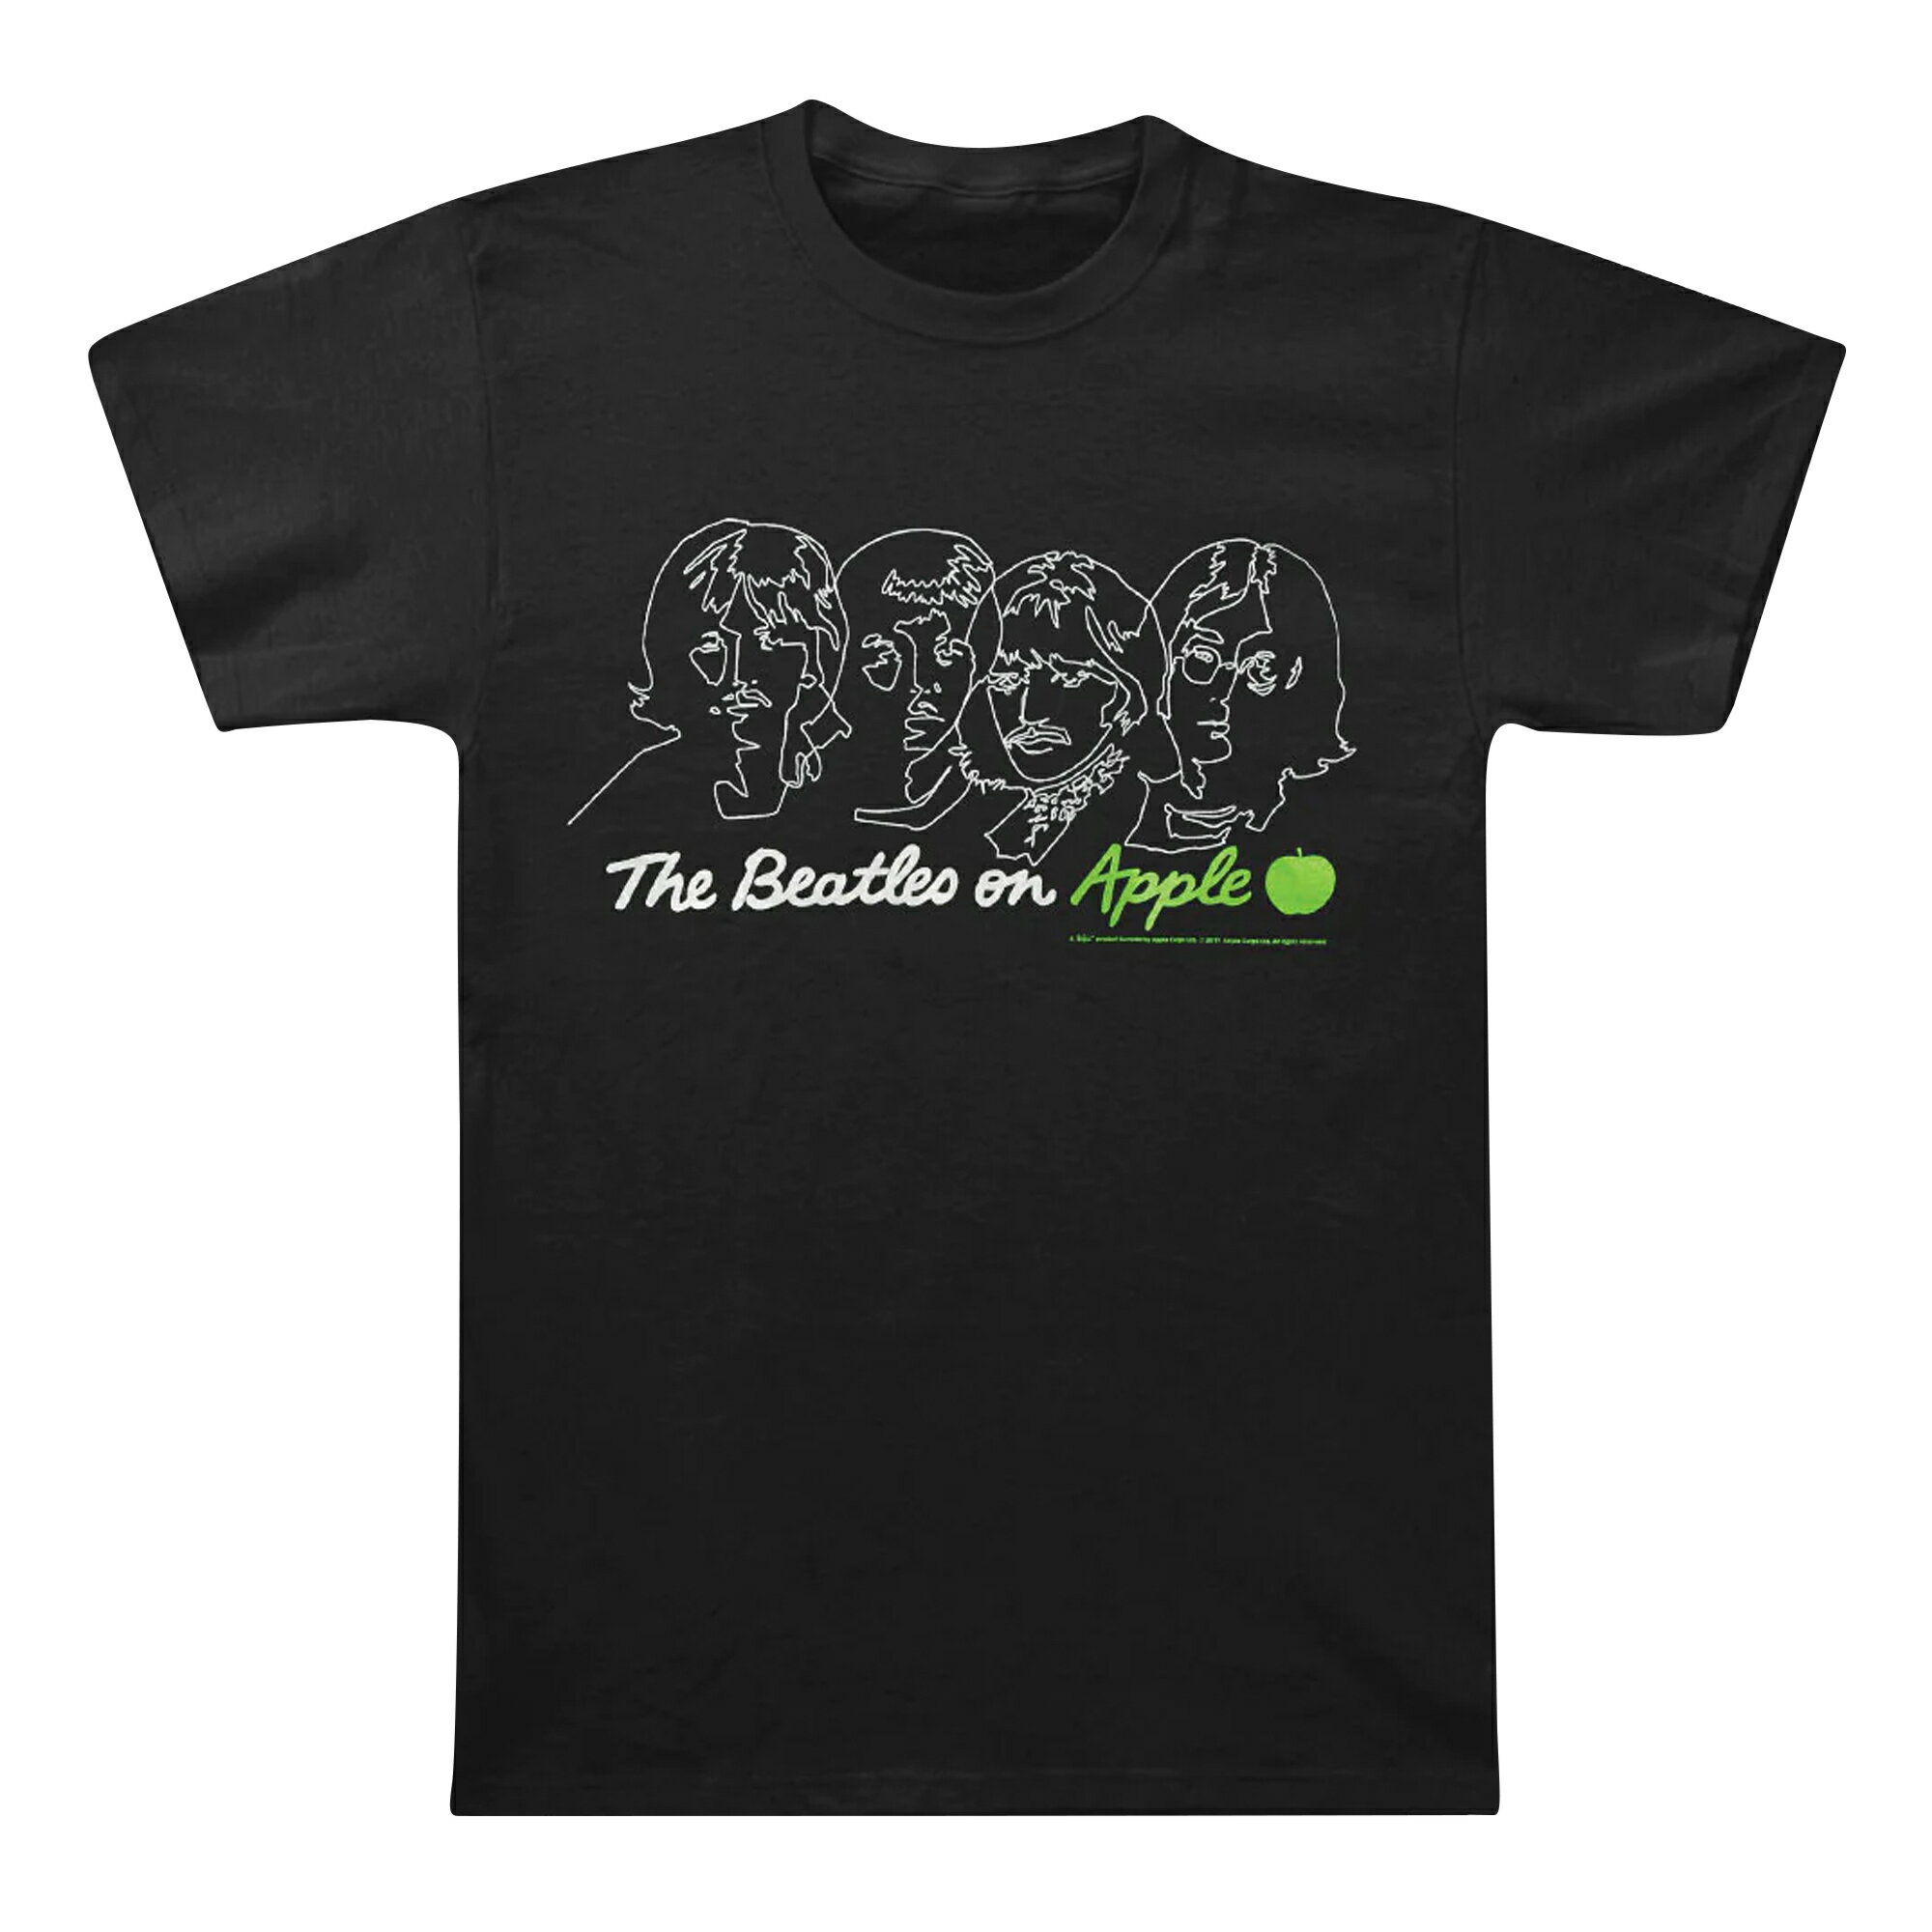 (ビートルズ) The Beatles オフィシャル商品 ユニセックス On Apple Tシャツ バックプリント 半袖 トップス 【海外通販】